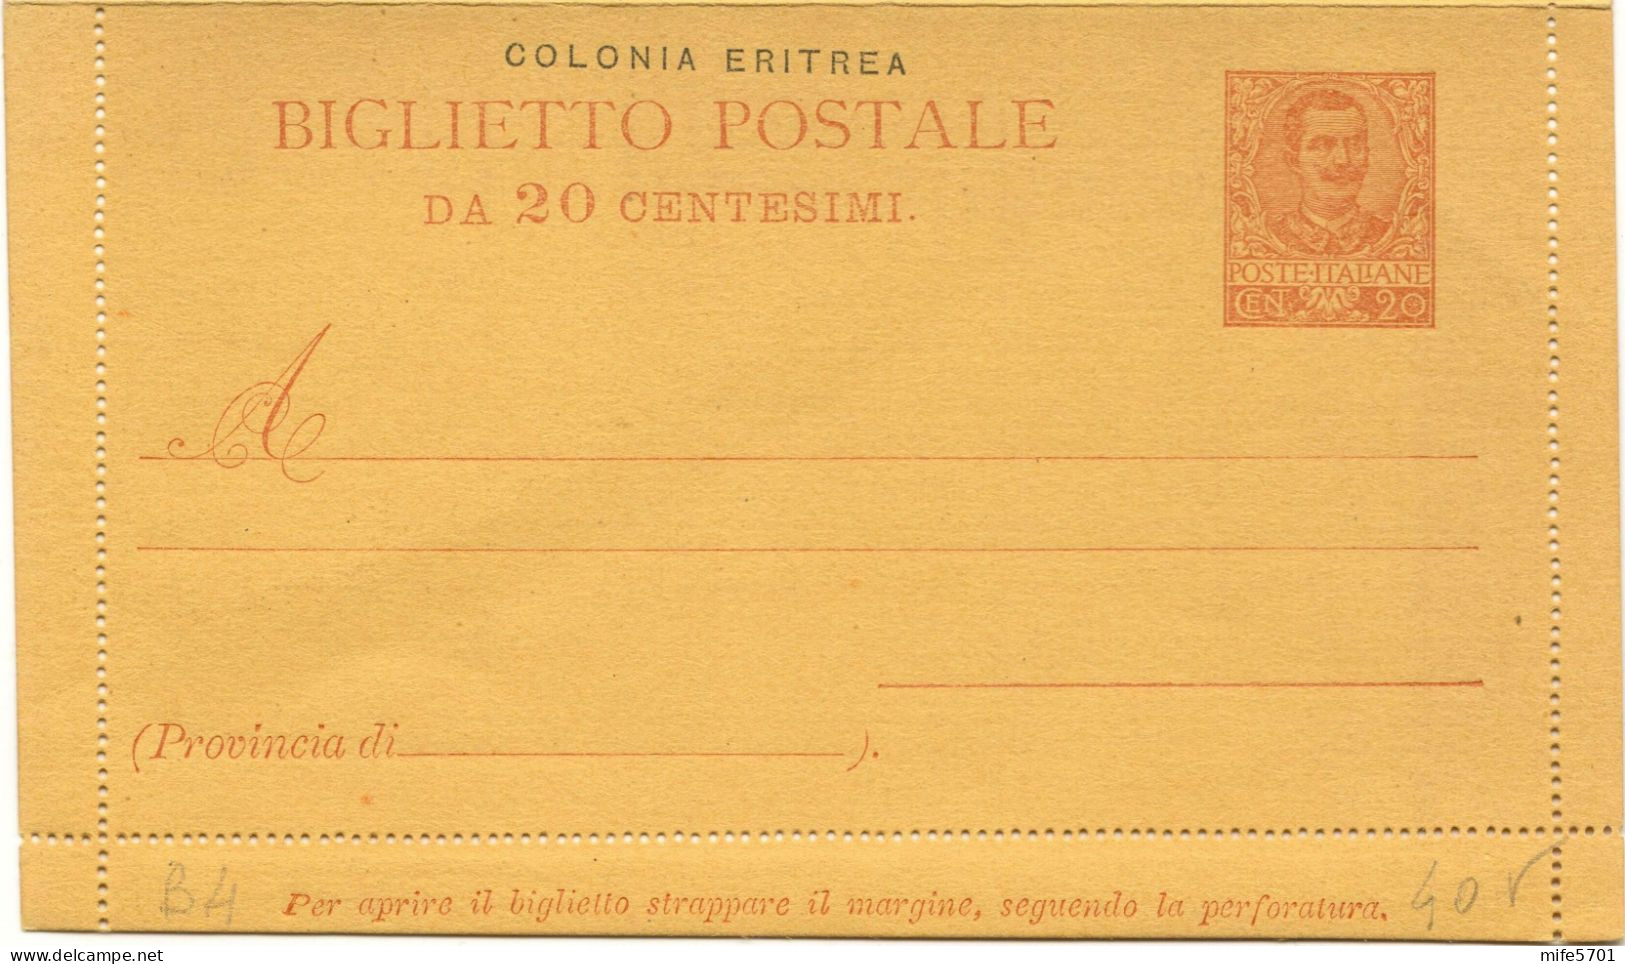 REGNO / COLONIE / ERITREA 1903 B3 / B4 2 BIGLIETTI POSTALI c. 5 E c. 20 'FLOREALE' SOPRASTAMPATI 'COLONIA ERITREA' NUOVI